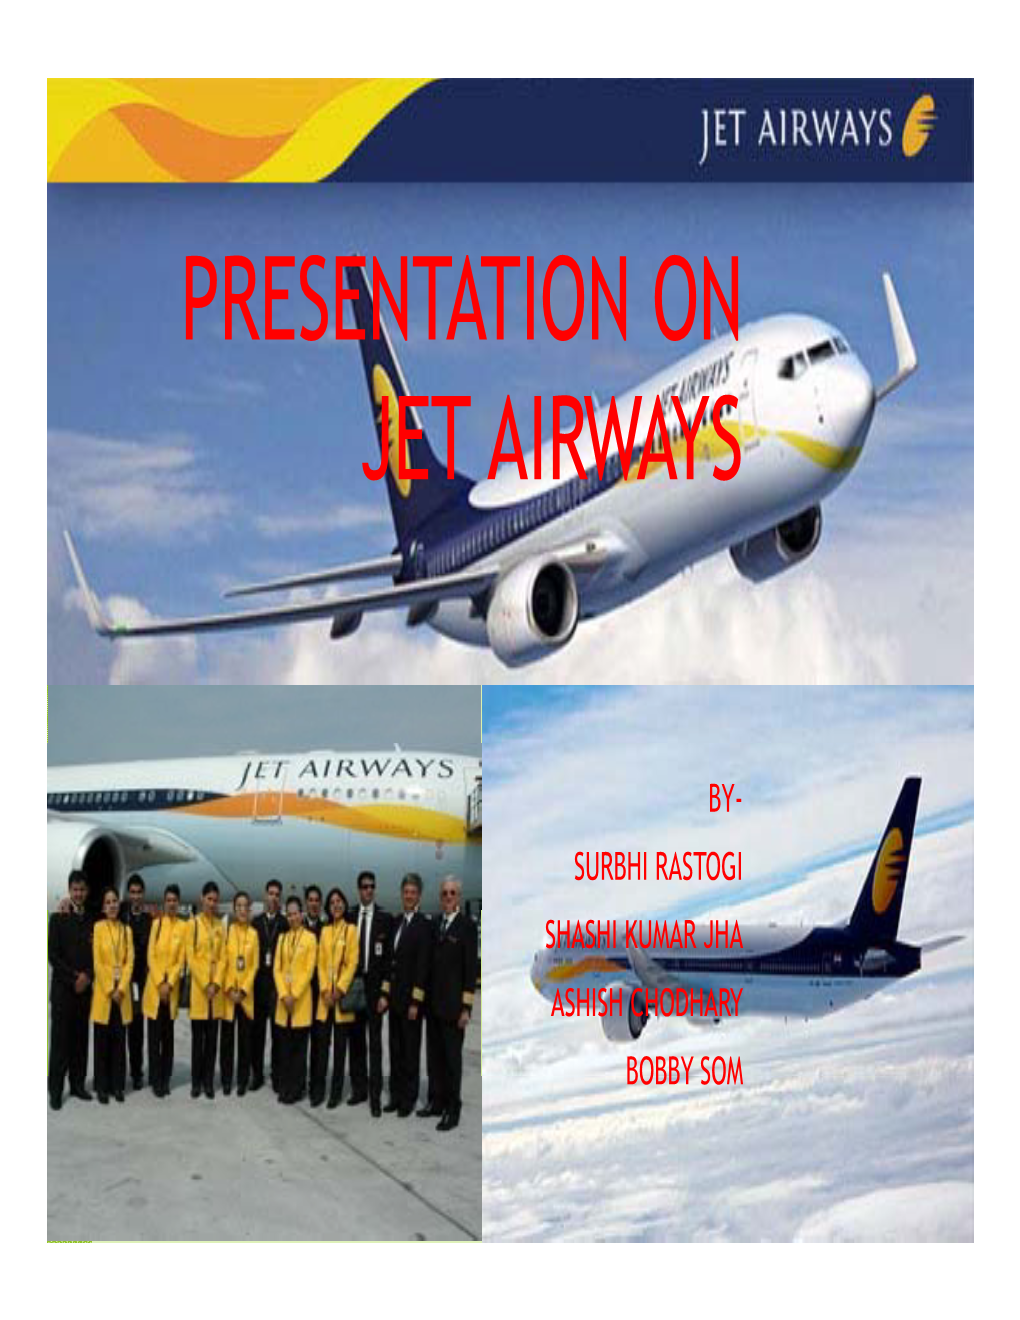 Presentation on Jet Airways